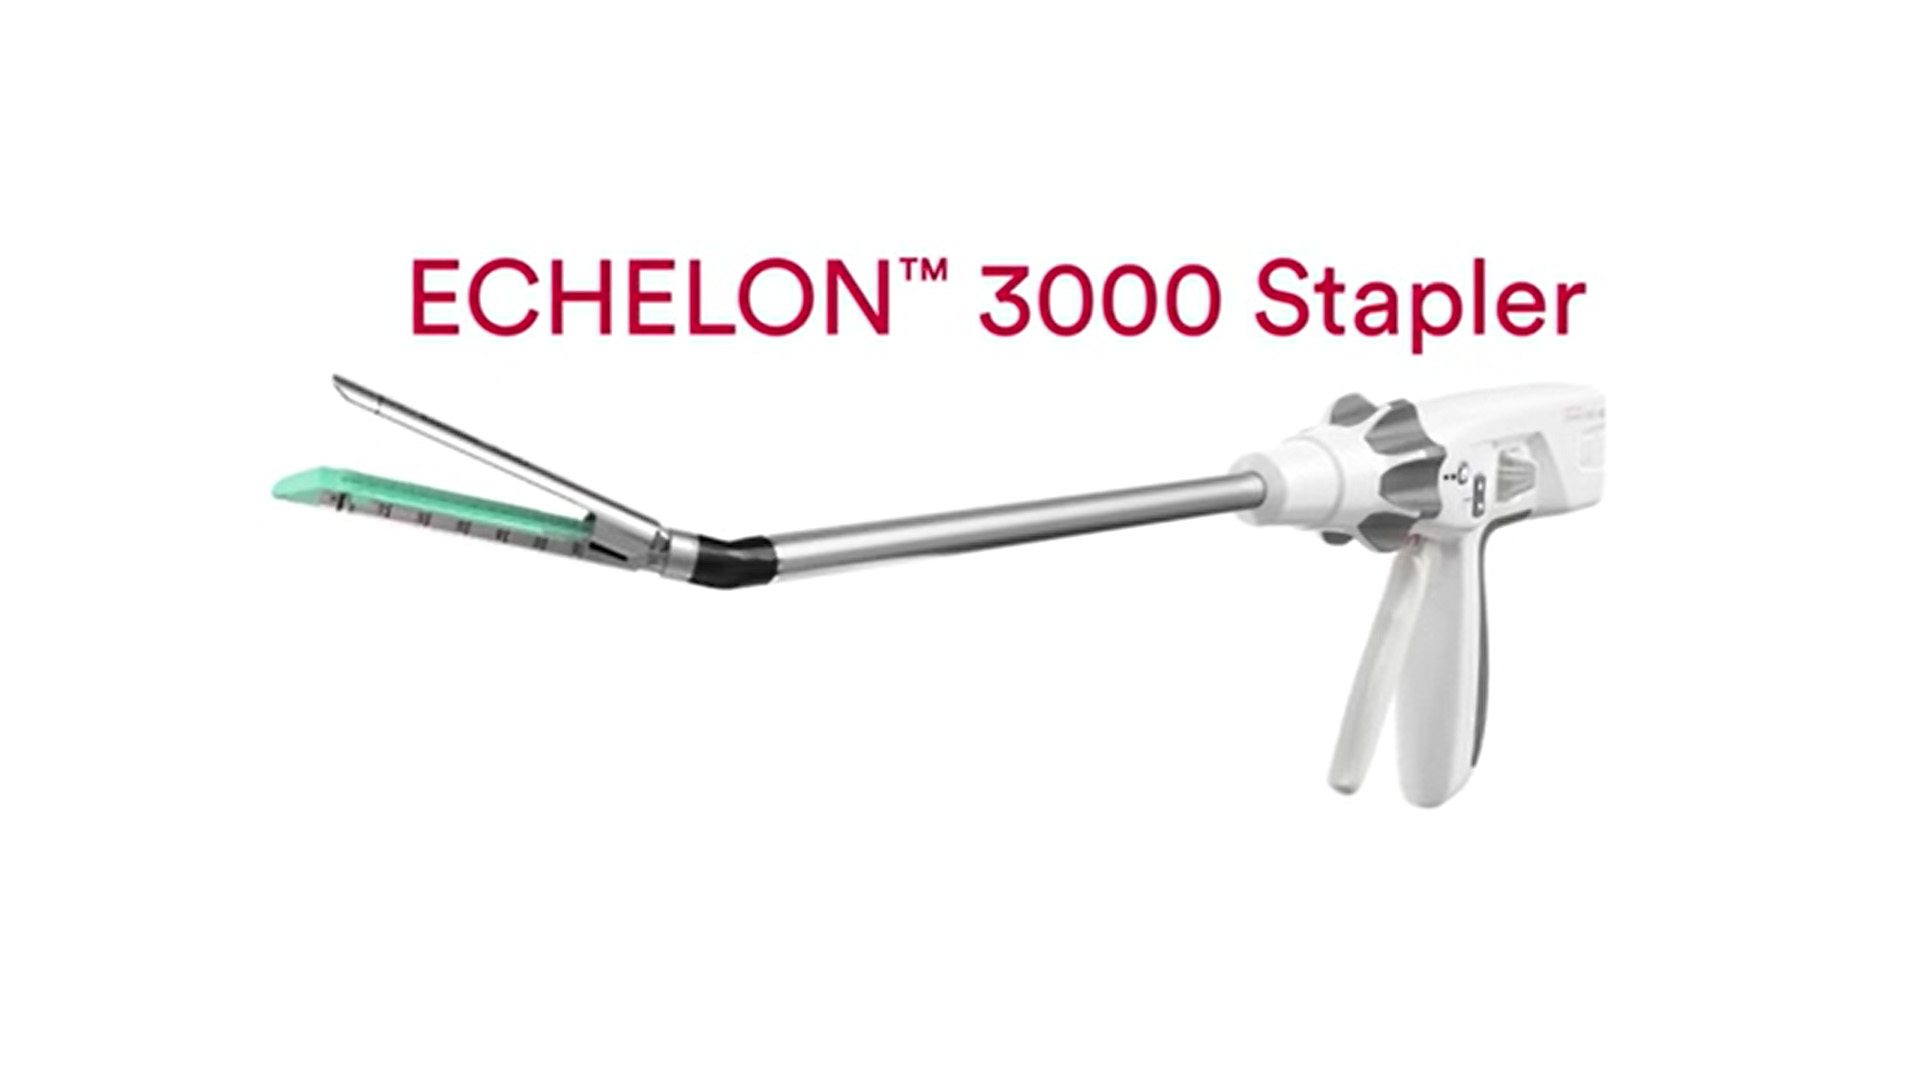 Play Video: ECHELON™ 3000 Stapler Overview